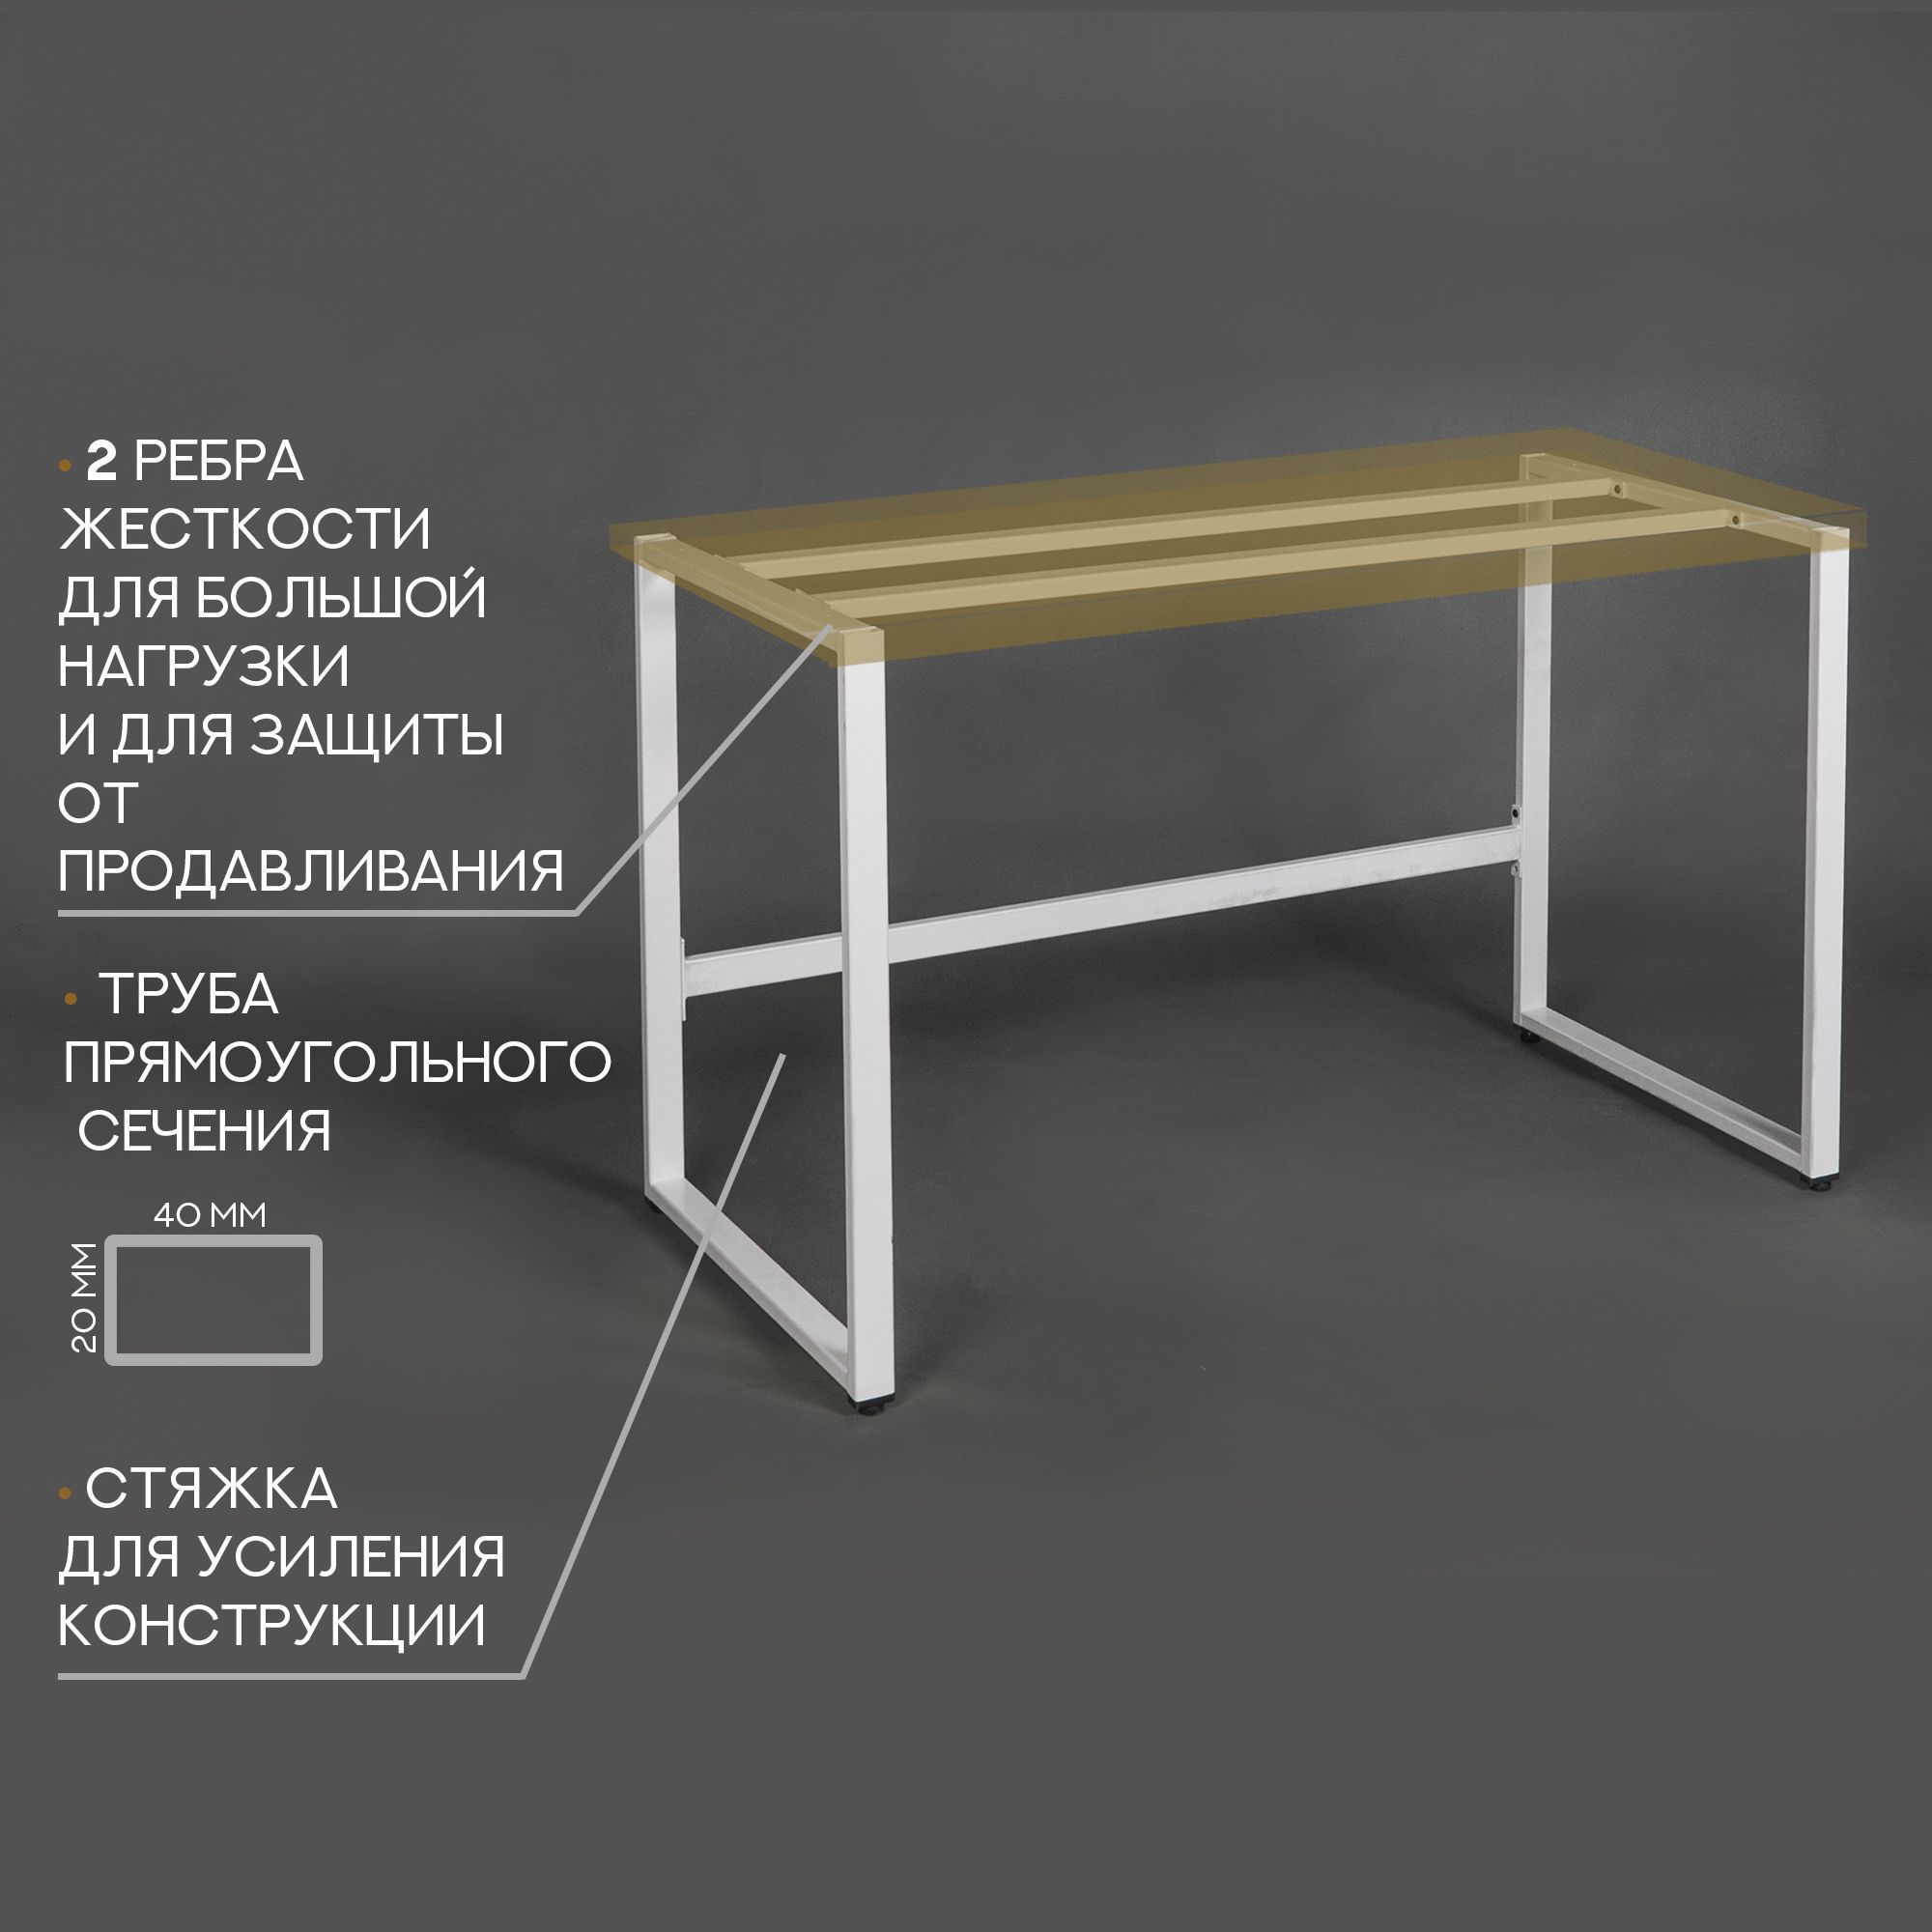 Цены и размеры на металлические подстолья и опоры ножки для стола в стиле LOFT